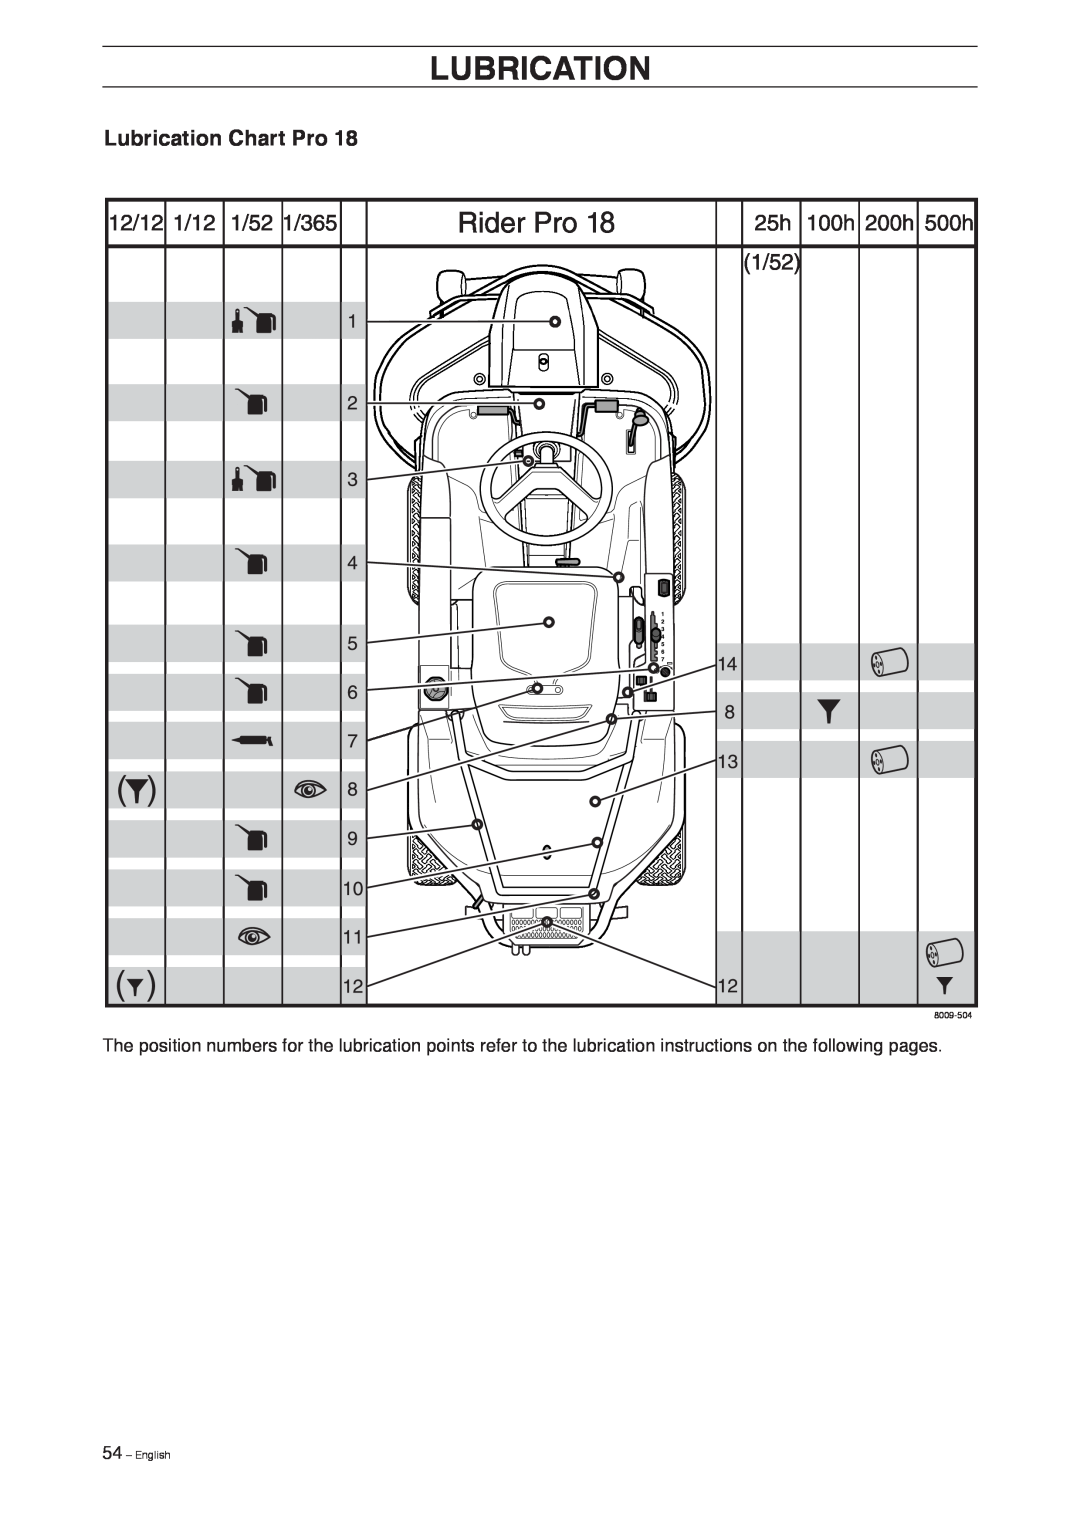 Husqvarna Pro 18 AWD manual Lubrication Chart Pro, 54 – English, 8009-504 